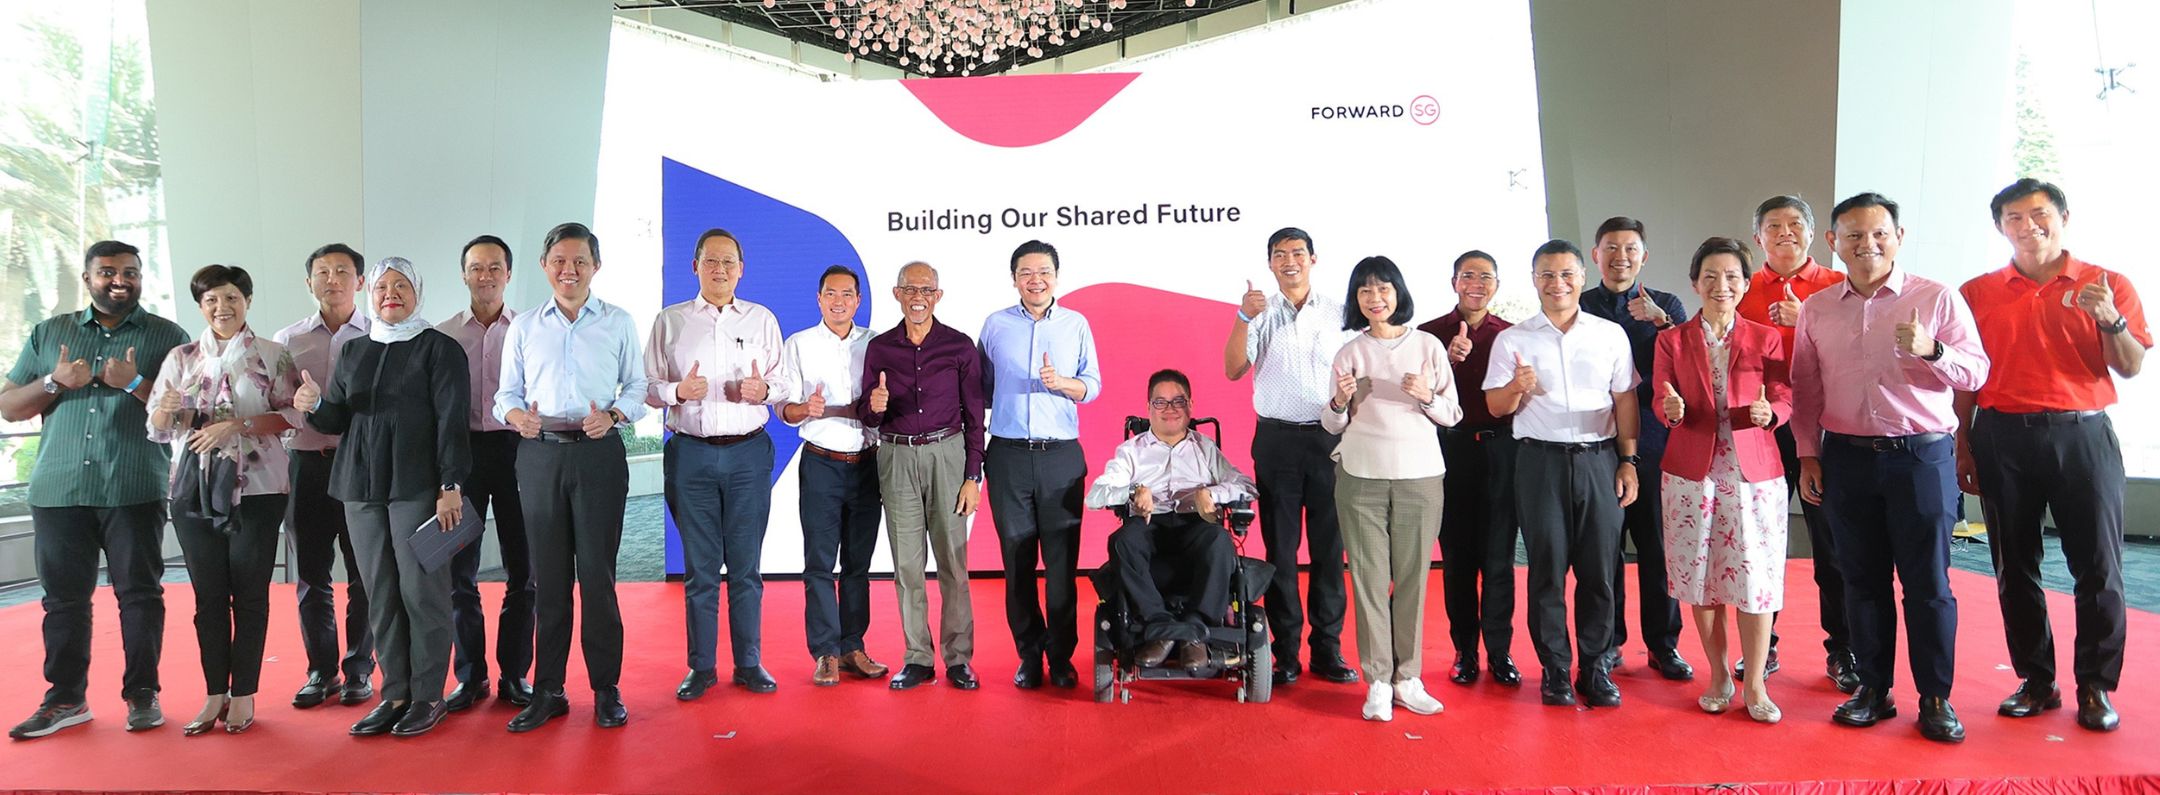 DPM Wong at Launch of Forward Singapore Festival_Herojpg jpg